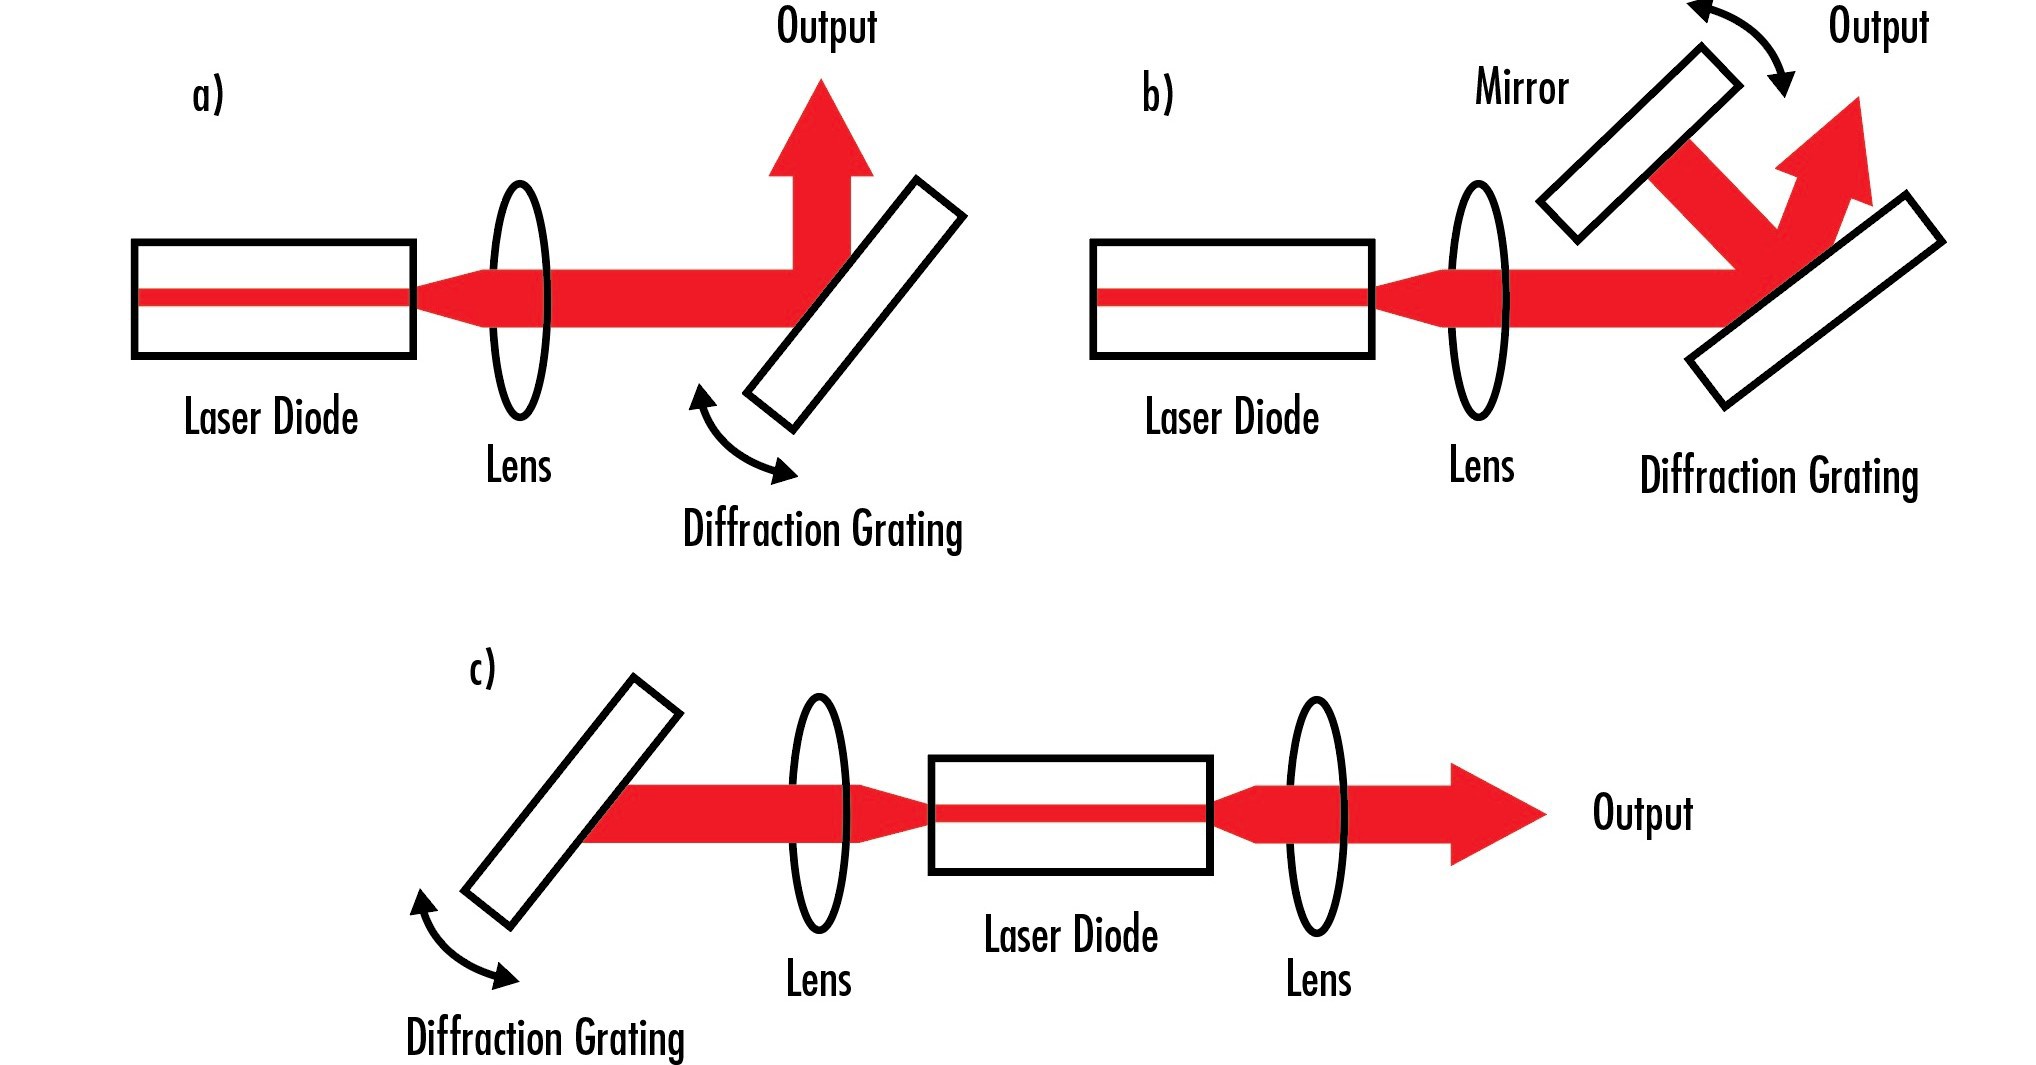 Ces trois configurations montrent les différentes façons dont les réseaux peuvent être utilisés pour accorder les longueurs d'onde de sortie d'un laser ou pour réduire la gamme des longueurs d'onde de sortie